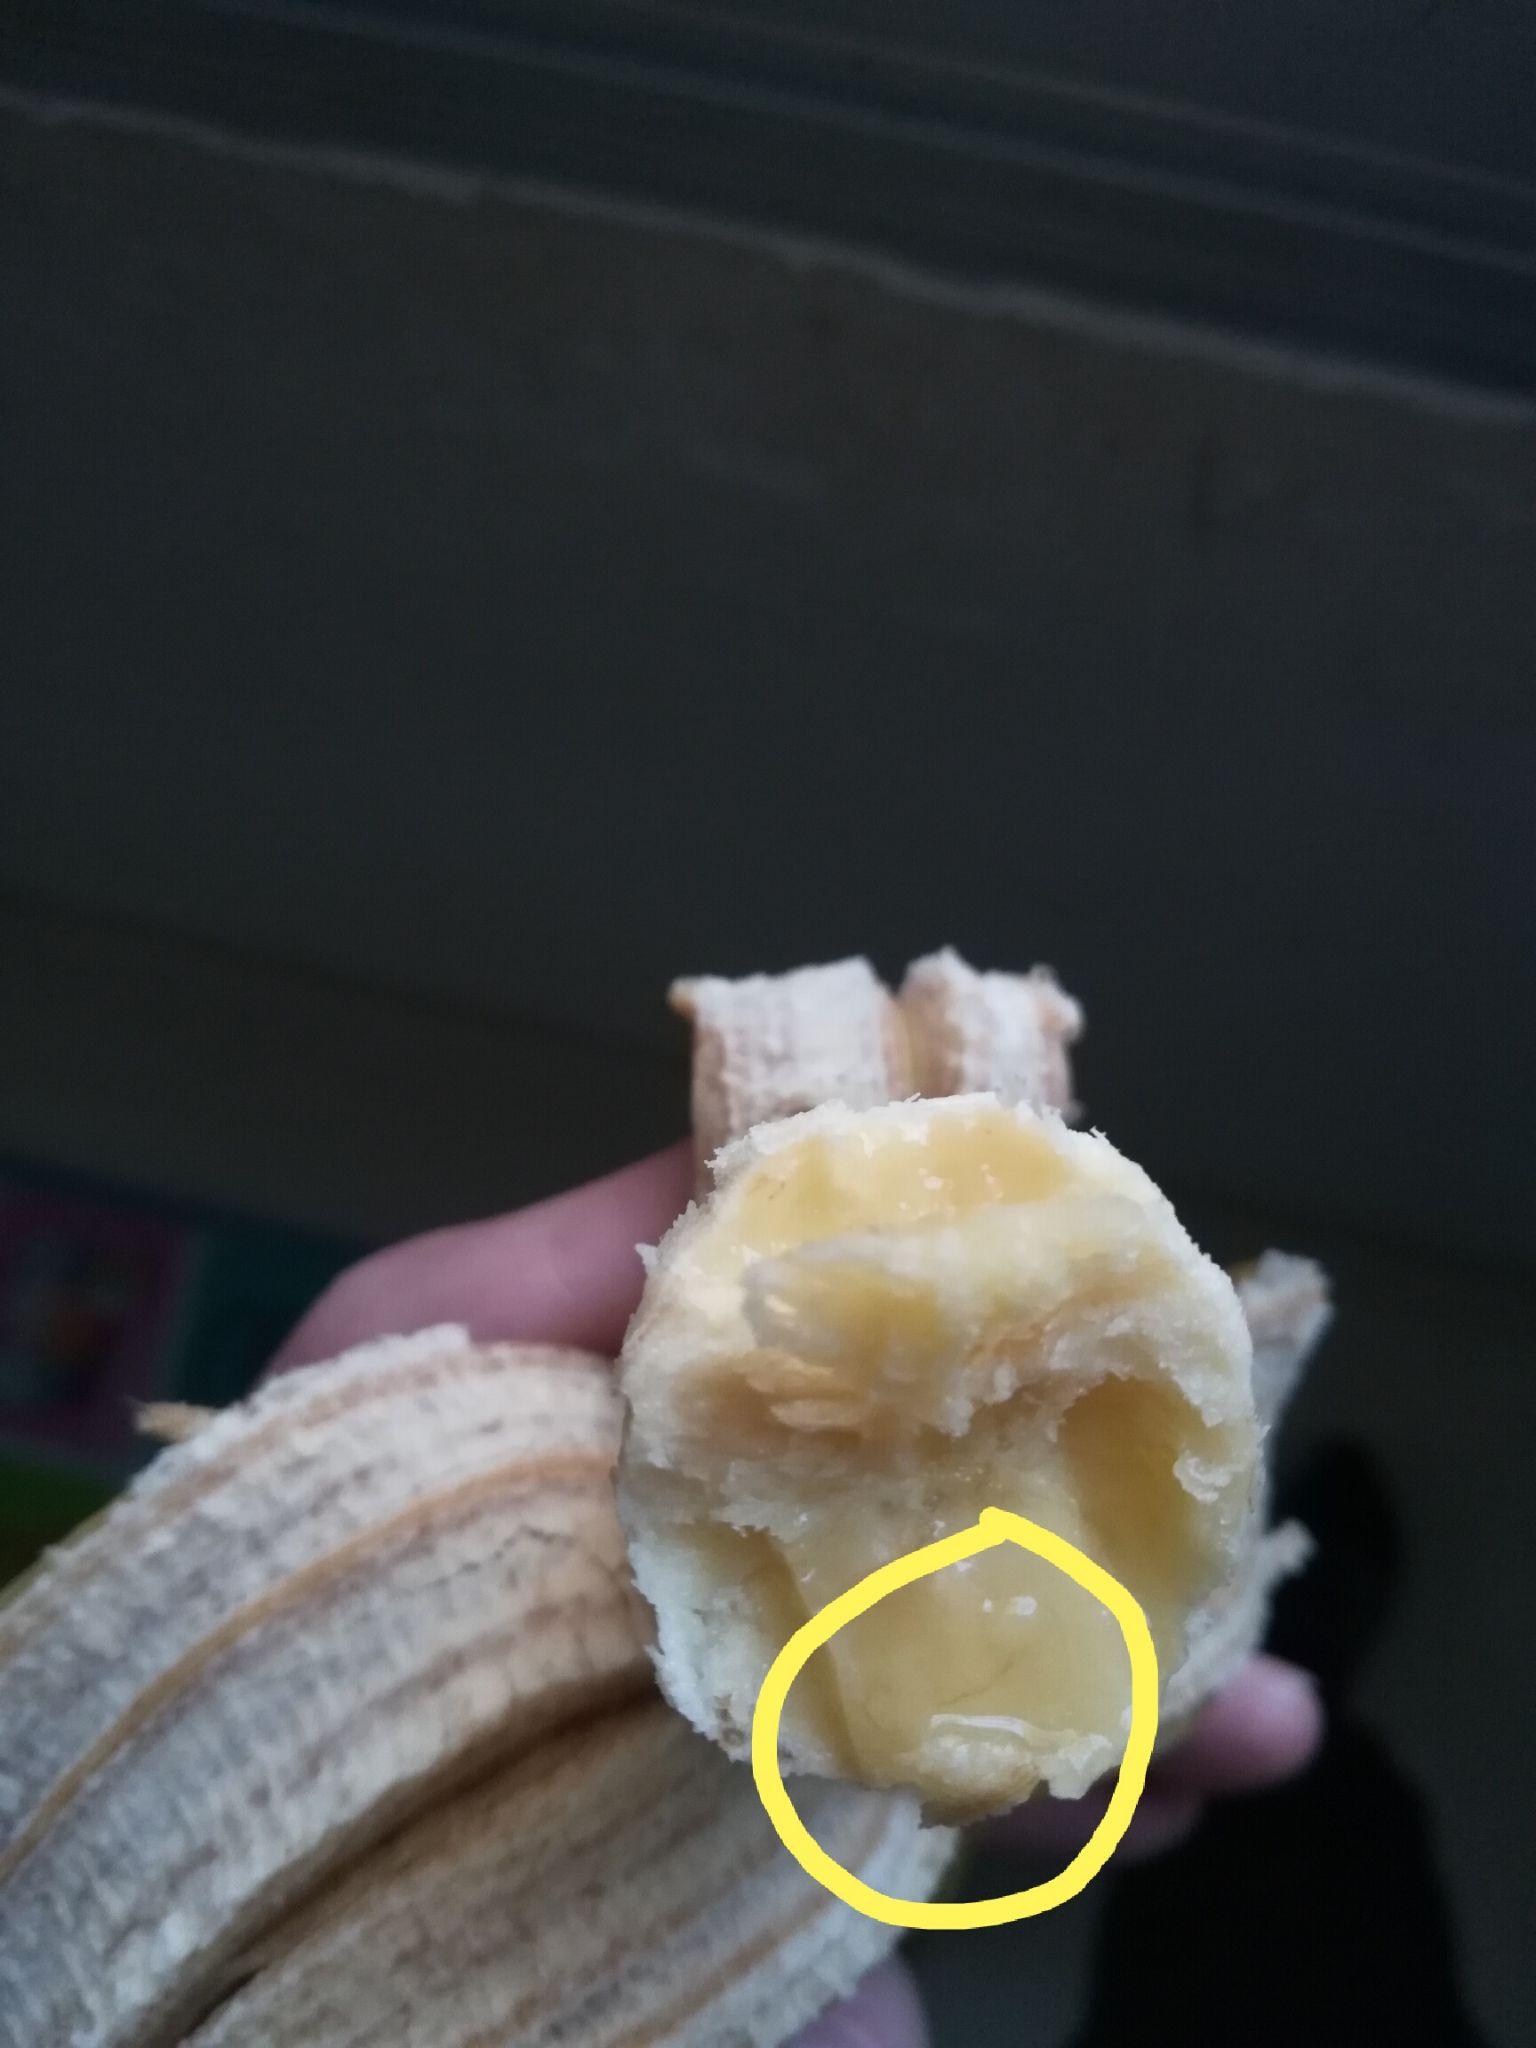 香蕉里的这个是寄生虫吗?一些香蕉里有很多